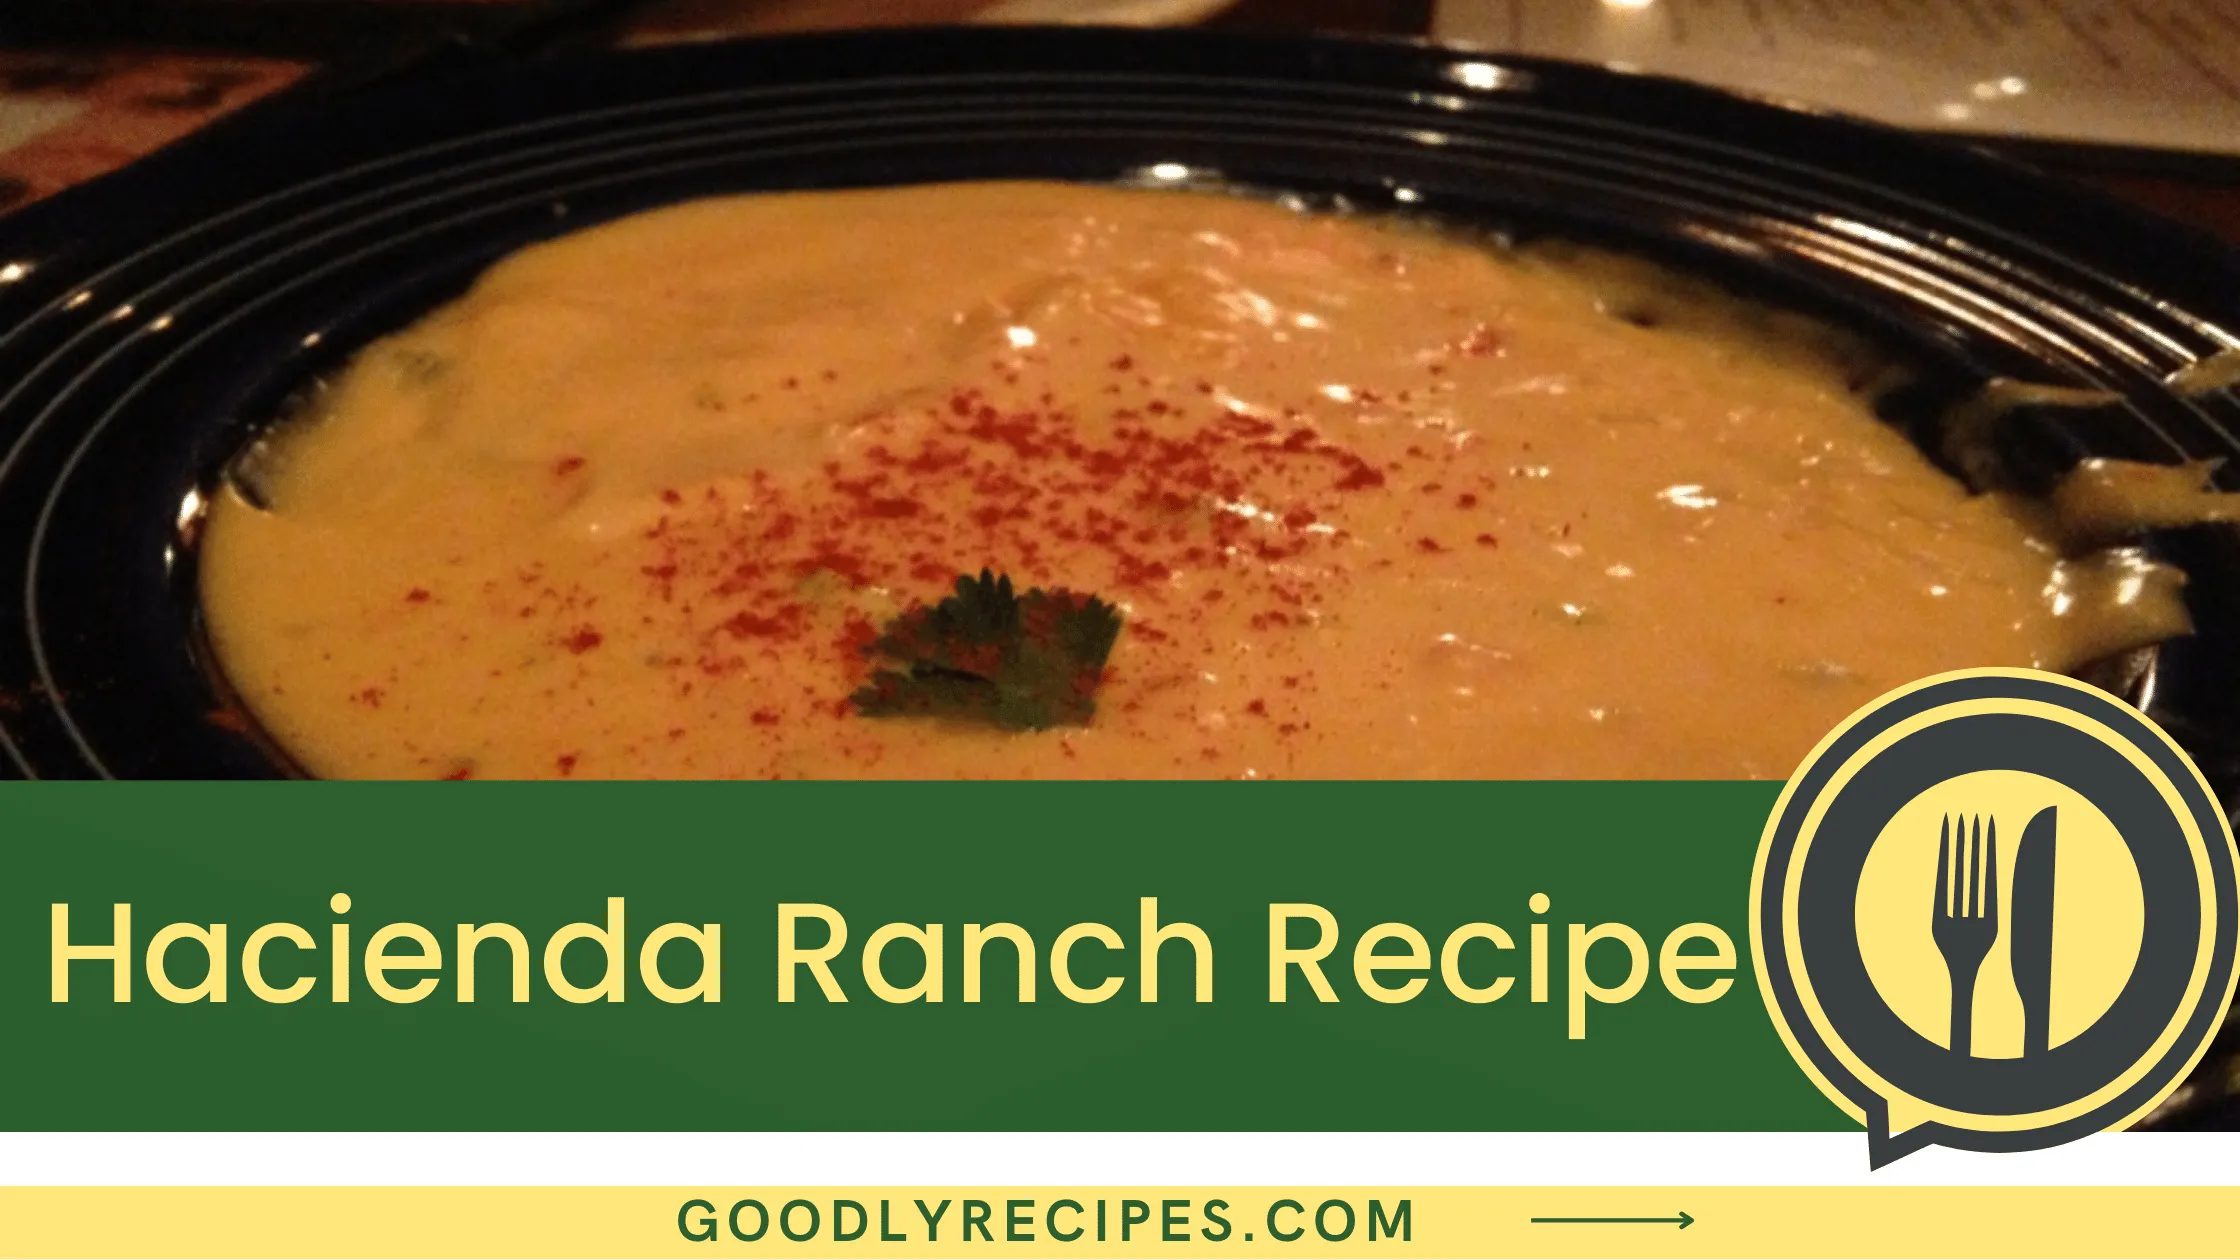 Hacienda Ranch Recipe - For Food Lovers